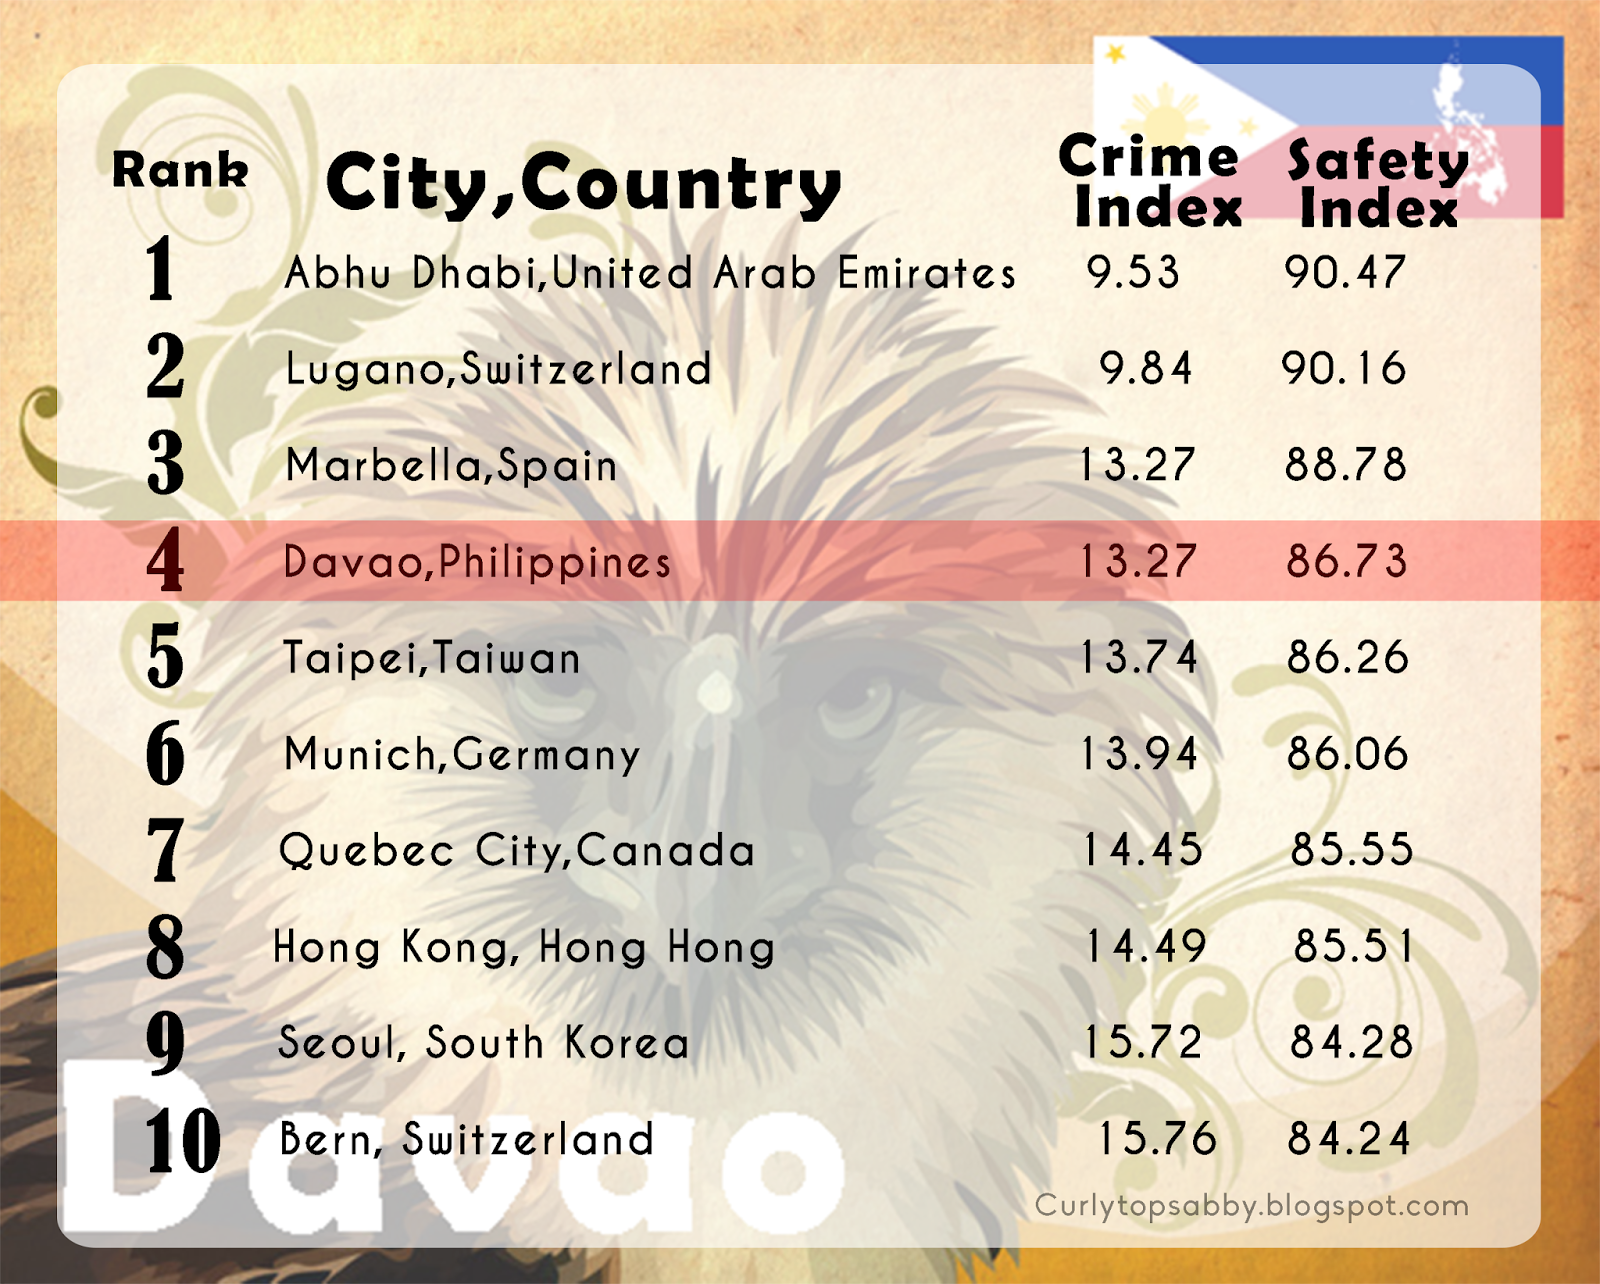 Davao City a világ 4. legbiztonságosabb városa. Ezt a kimagasló eredményt Rodrigo Duterte keményvonalas polgármesternek köszönheti!